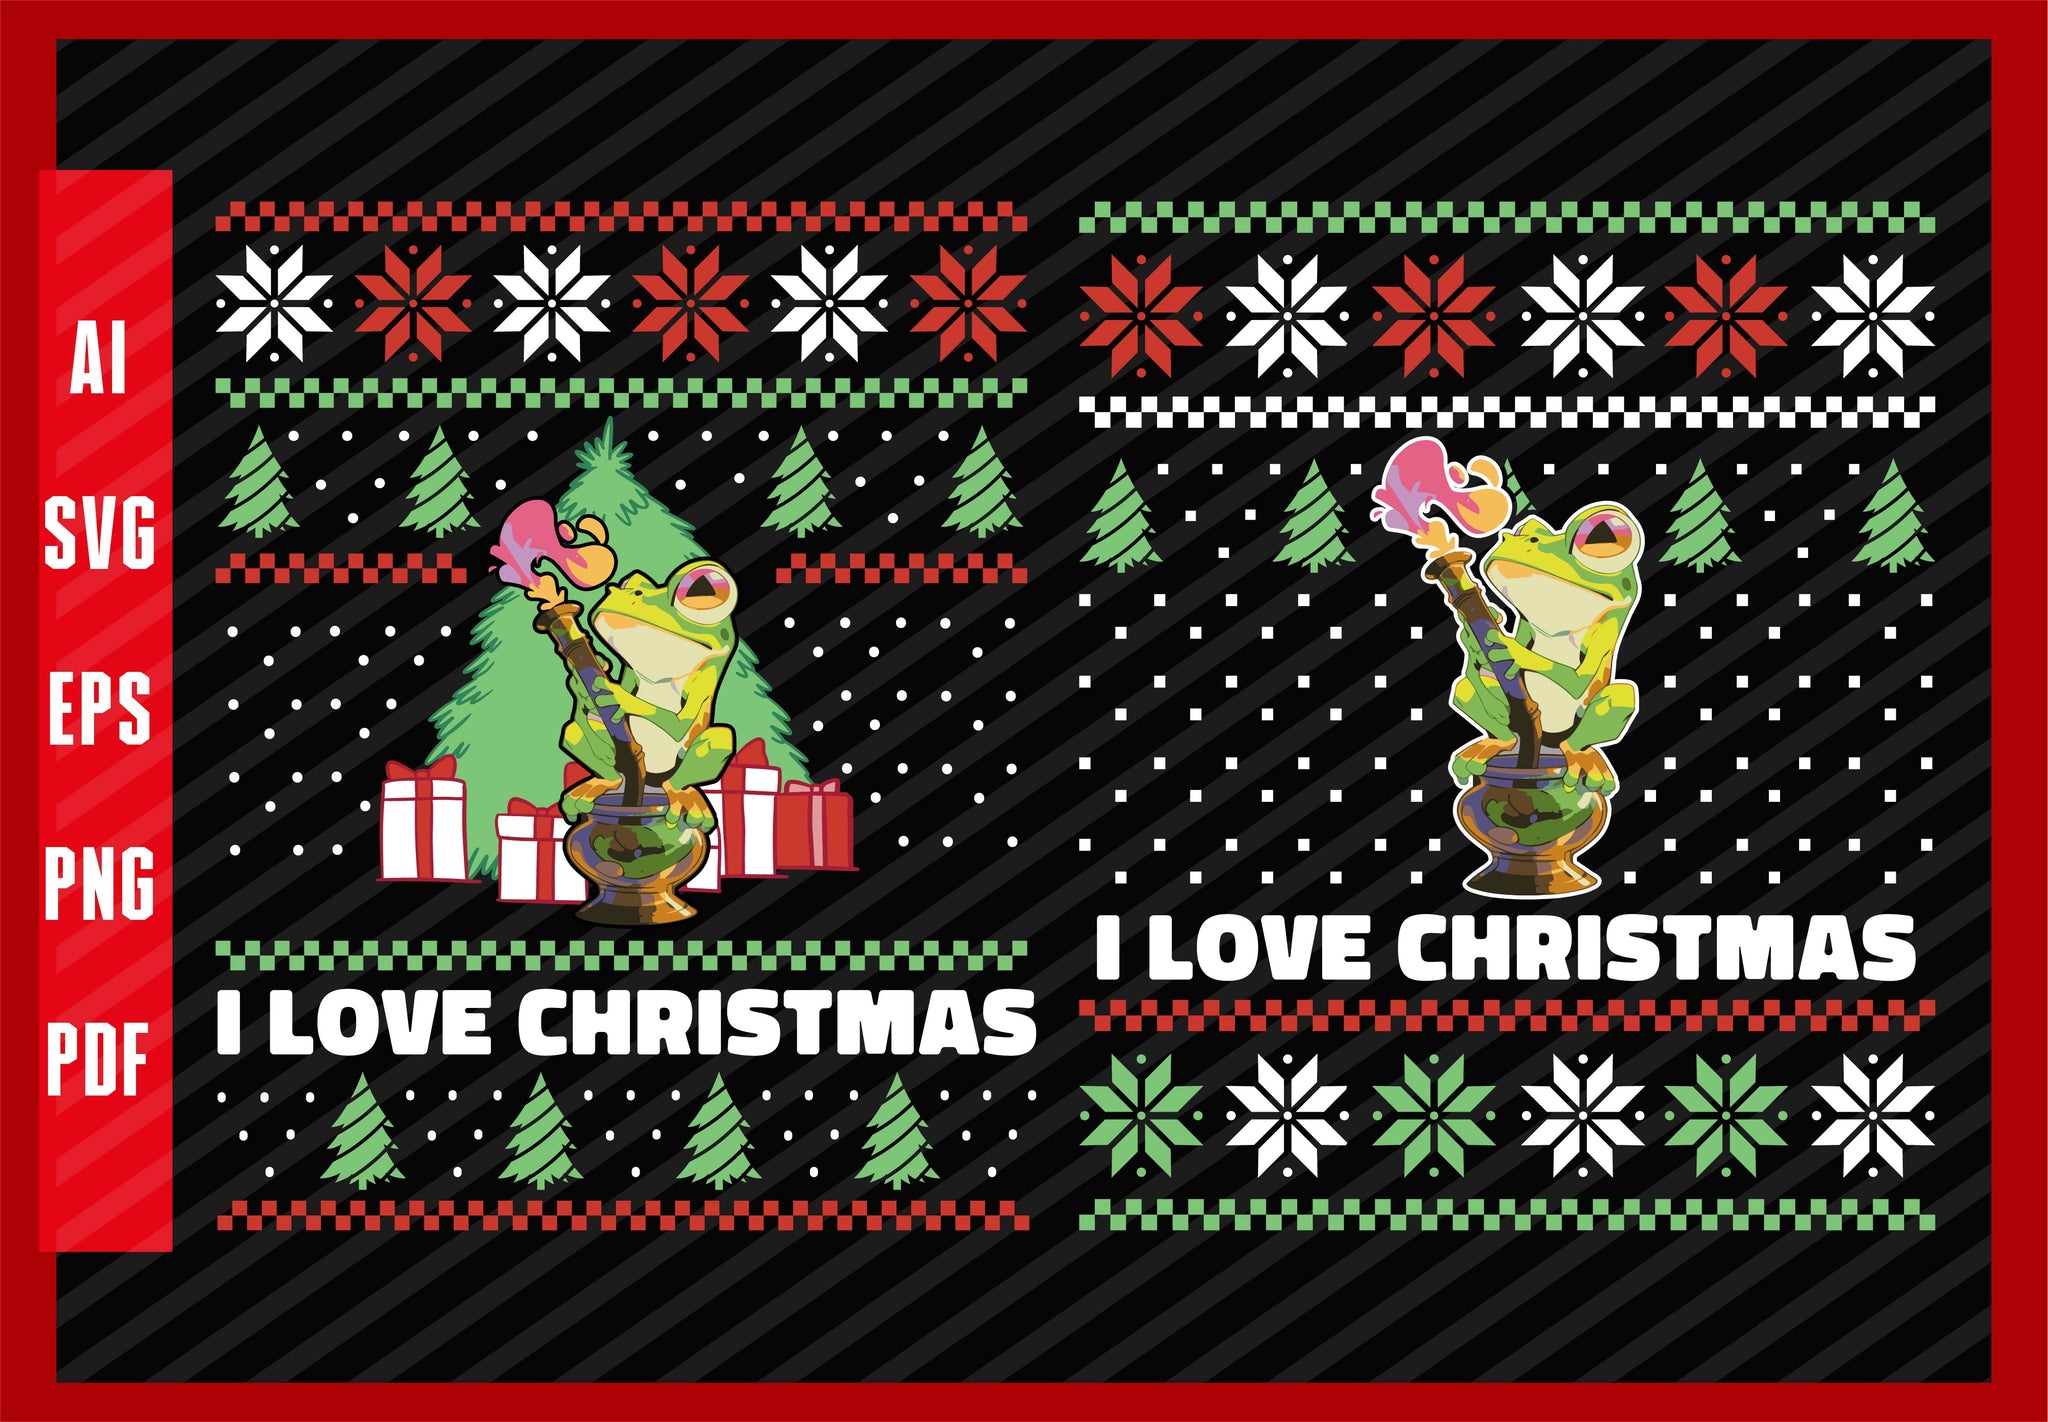 Frog Animals Smoking Funny Design, I Love Christmas T-Shirt Design Eps, Ai, Png, Svg and Pdf Printable Files